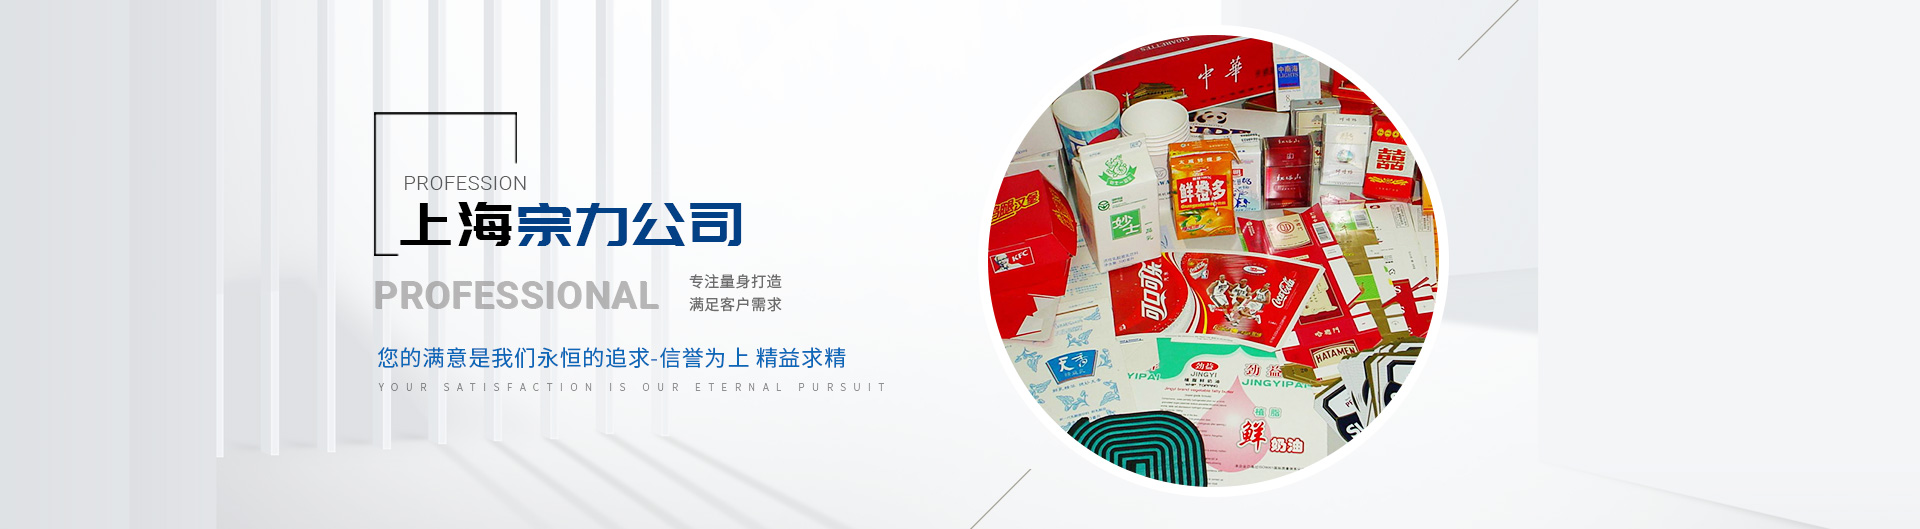 上海爱游戏app
印刷包装机械有限公司